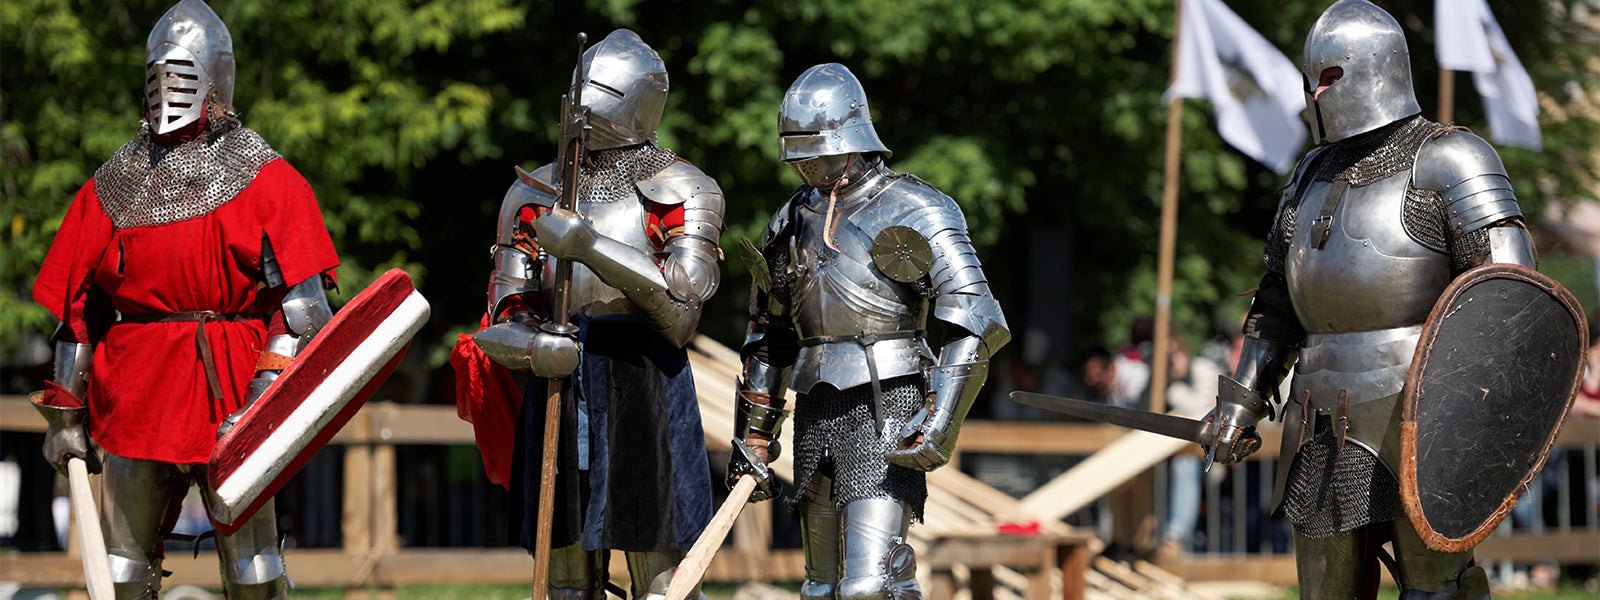 Knights Templar Equipment